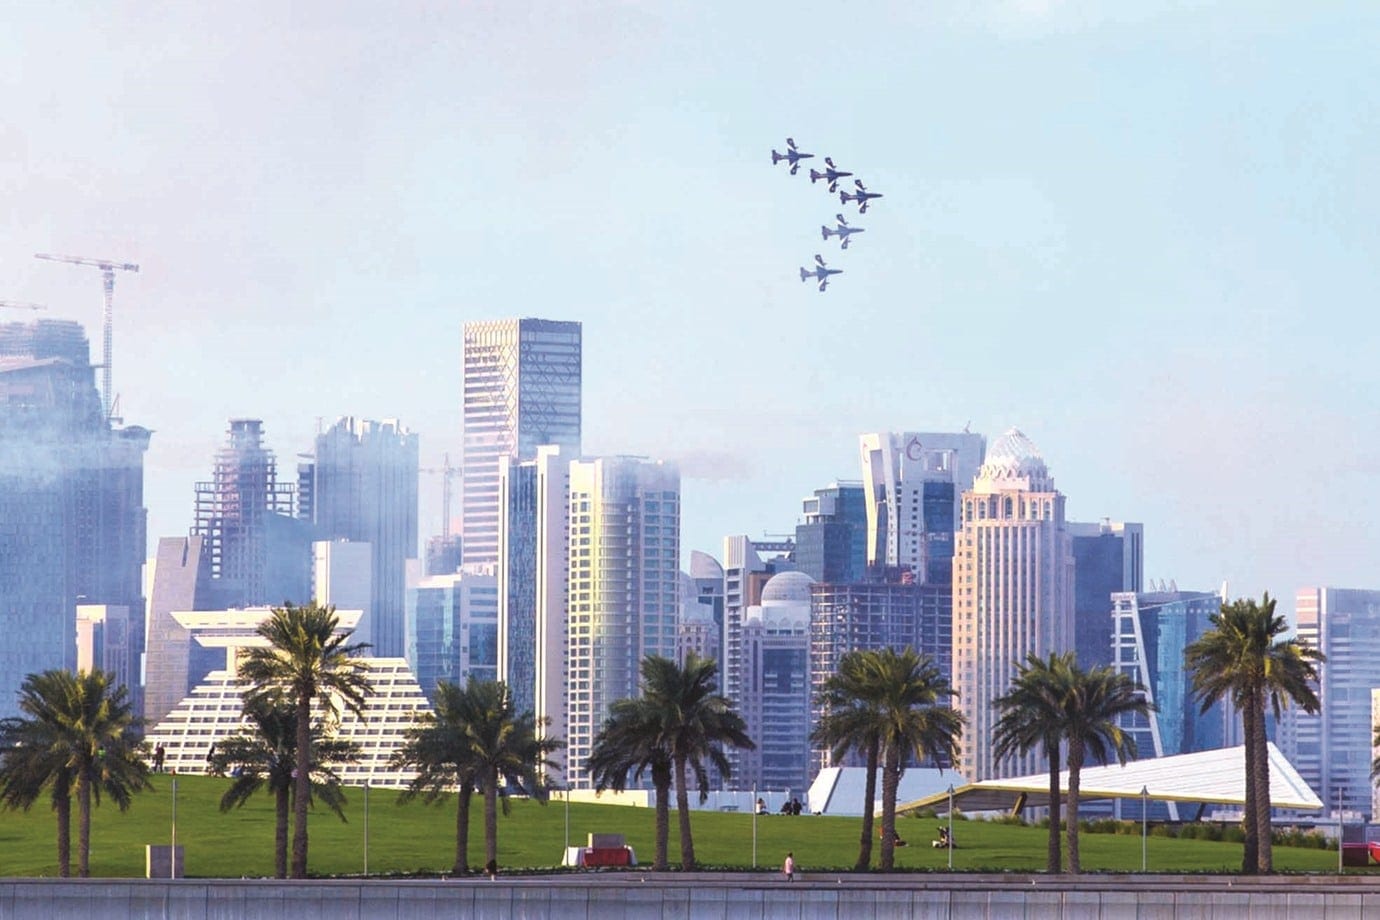 Stunning aerobatics wow thousands at Corniche